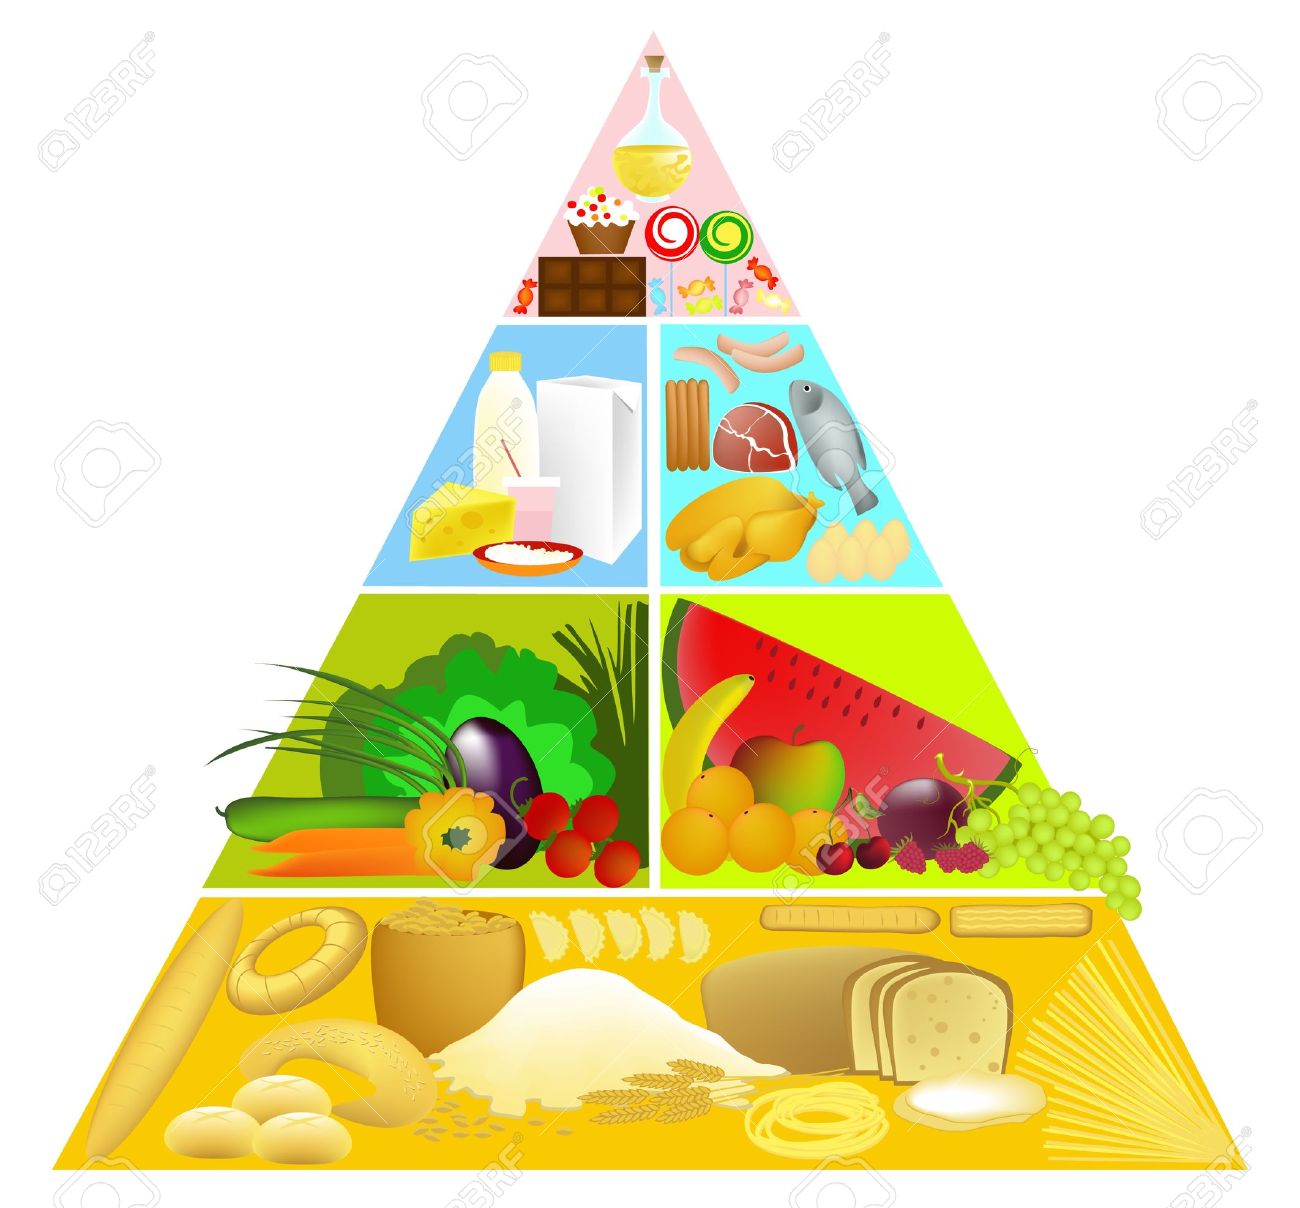 food pyramid: Food Pyramid Illustration